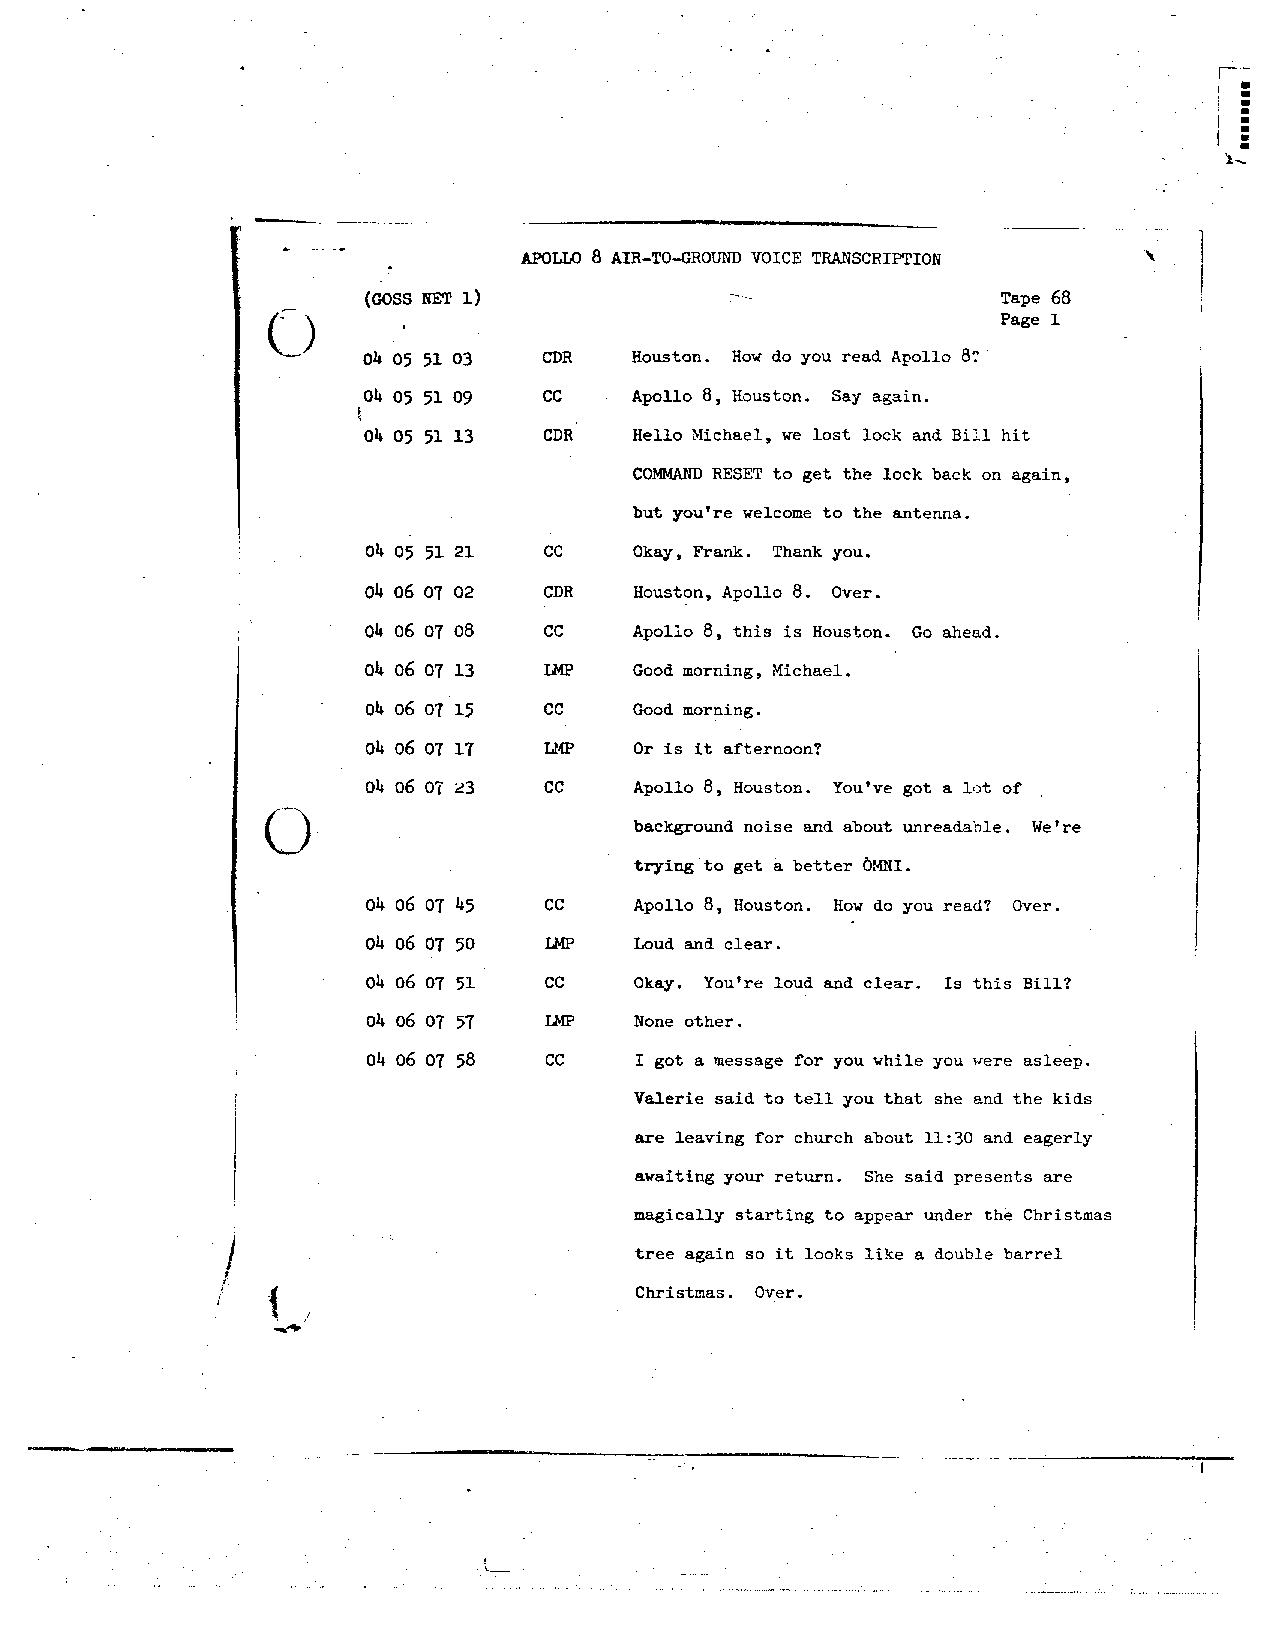 Page 533 of Apollo 8’s original transcript